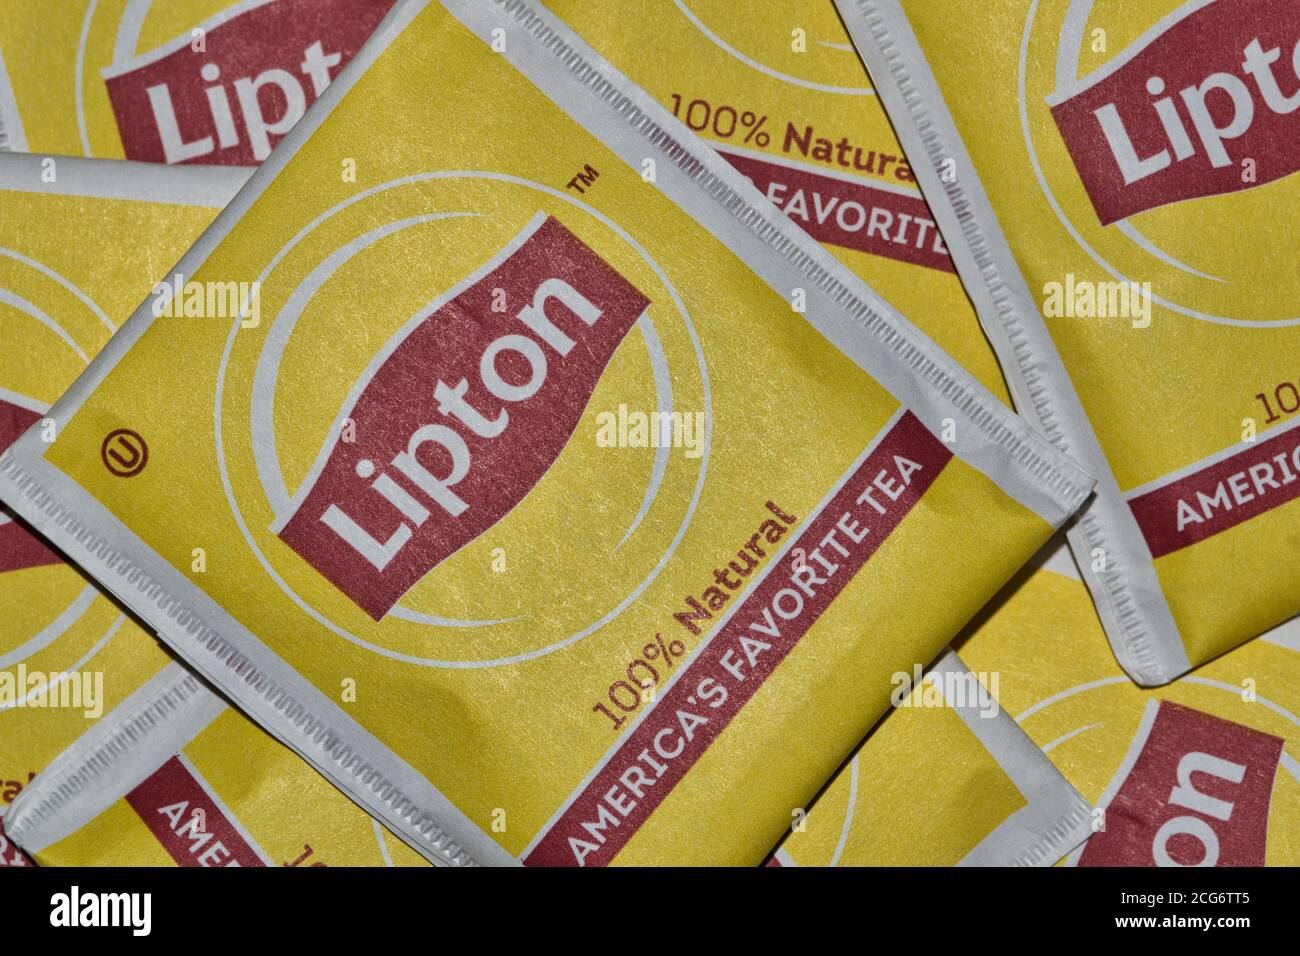 Houston, Texas/USA 05/10/2020: Pacchetti quadrati di bustine di tè Lipton non aperti, sparsi liberamente, immagine macro. Foto Stock